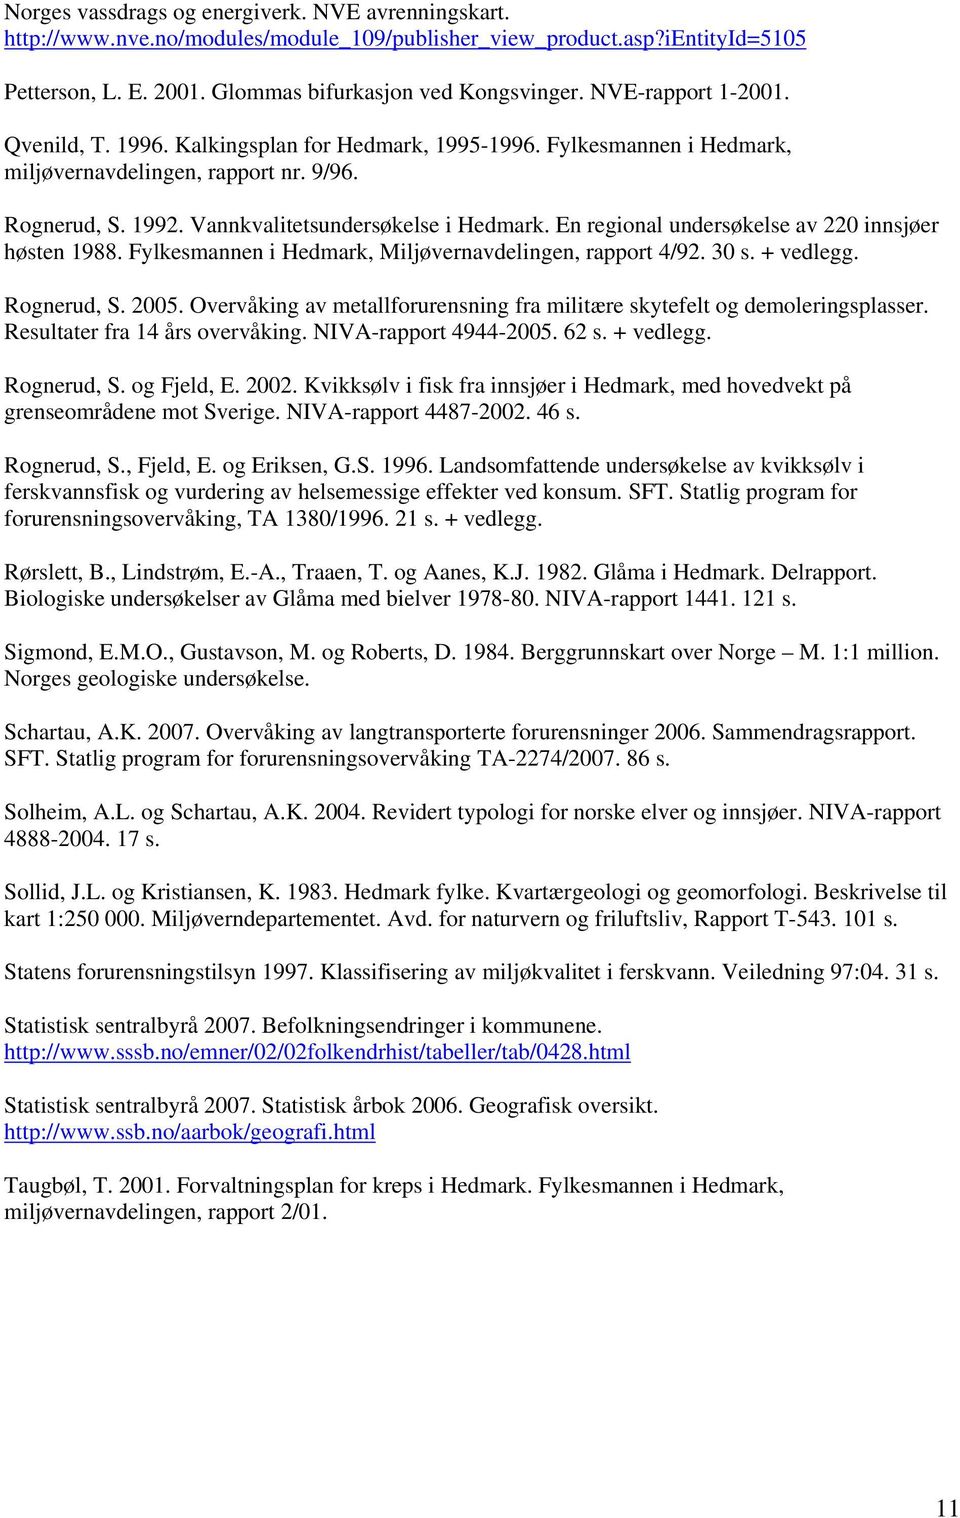 En regional undersøkelse av 22 innsjøer høsten 1988. Fylkesmannen i Hedmark, Miljøvernavdelingen, rapport 4/92. 3 s. + vedlegg. Rognerud, S. 25.